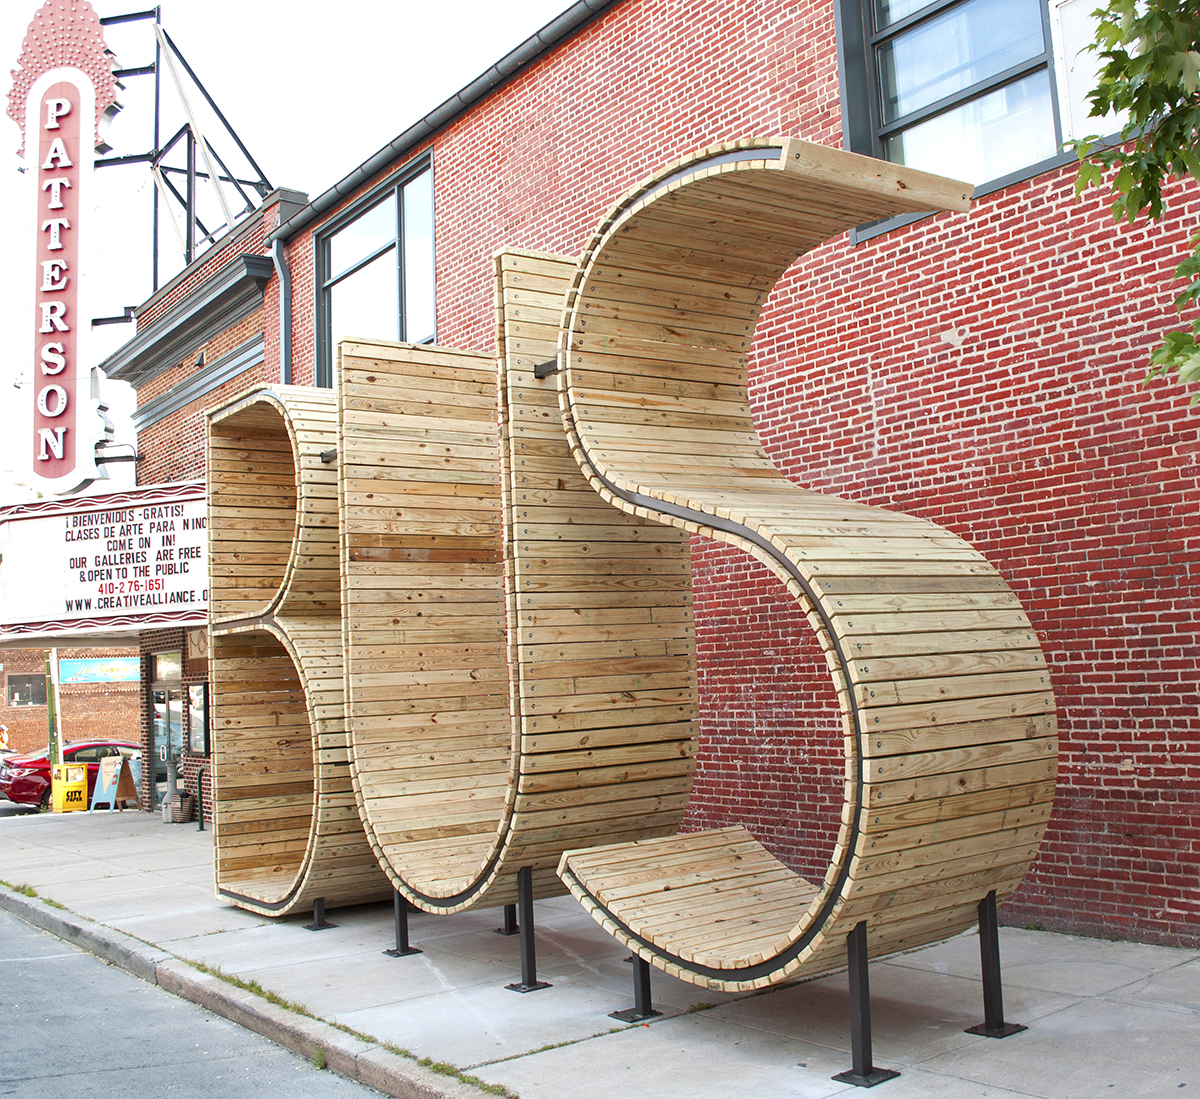  mmmm...'s new Baltimore bus stop sculpture.&nbsp; 